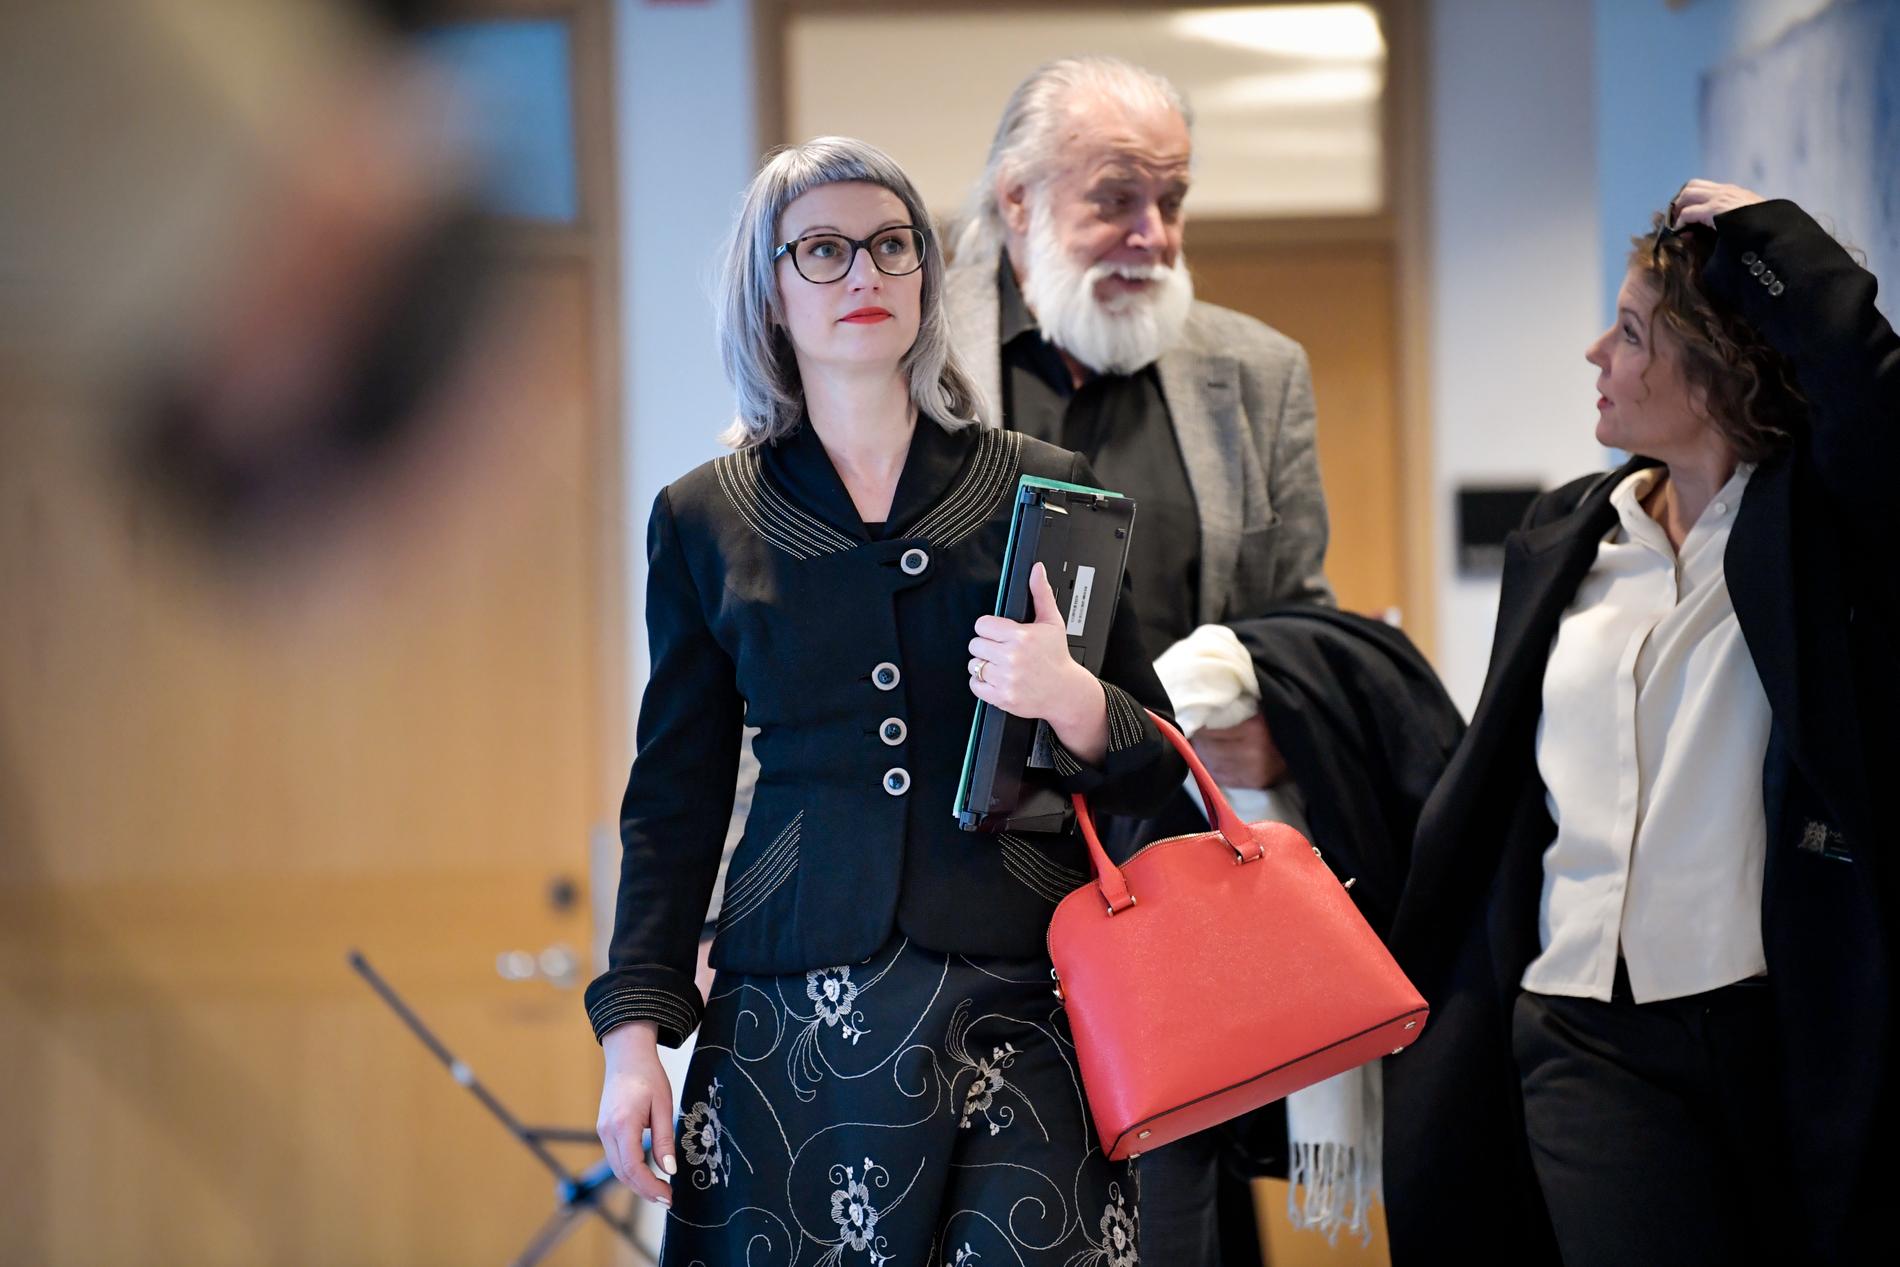 Åklagare Liselott Herschend på väg in till förhandlingssalen i Uppsala tingsrätt. Bakom henne ett av målsägarbiträdena, Leif Ericksson, som företräder en av kvinnorna som enligt åtalet ska ha utsatts för misshandel.